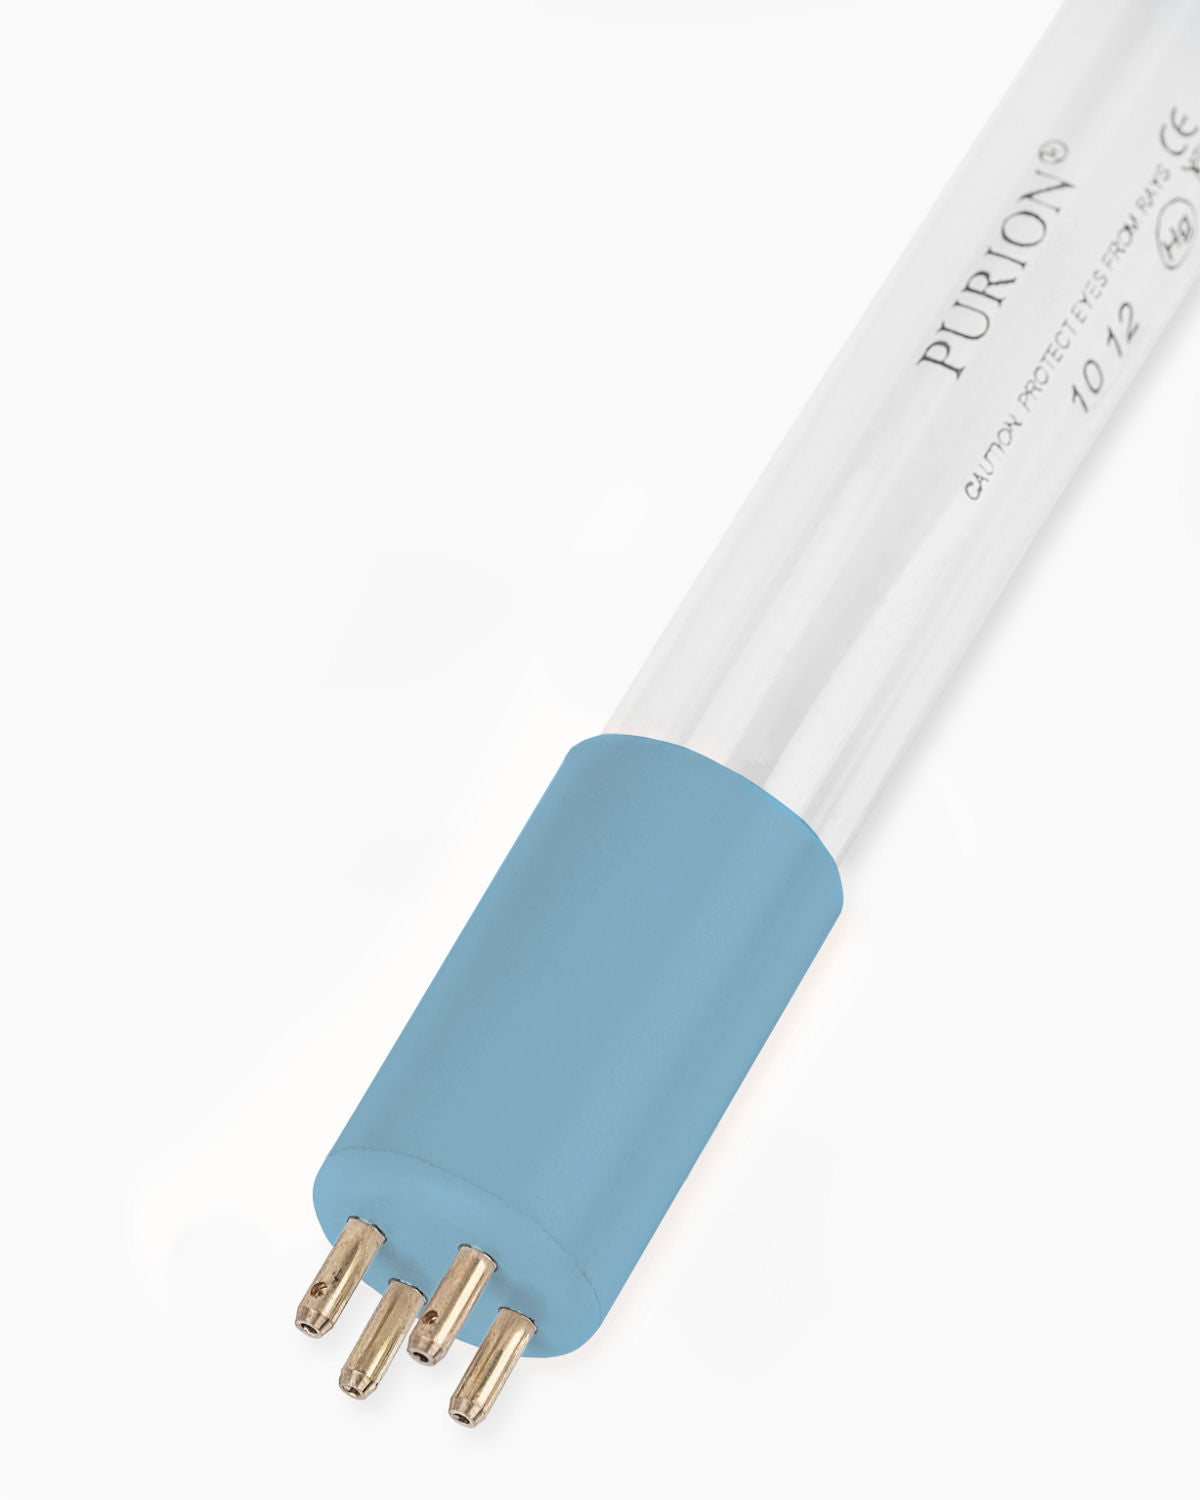 Eine PURION 1000 110 - 240 V AC Basic-Blaulichtröhre, die UV-C-Licht ausstrahlt, um die Wasserdesinfektion zu erleichtern, auf einem weißen Hintergrund platziert.